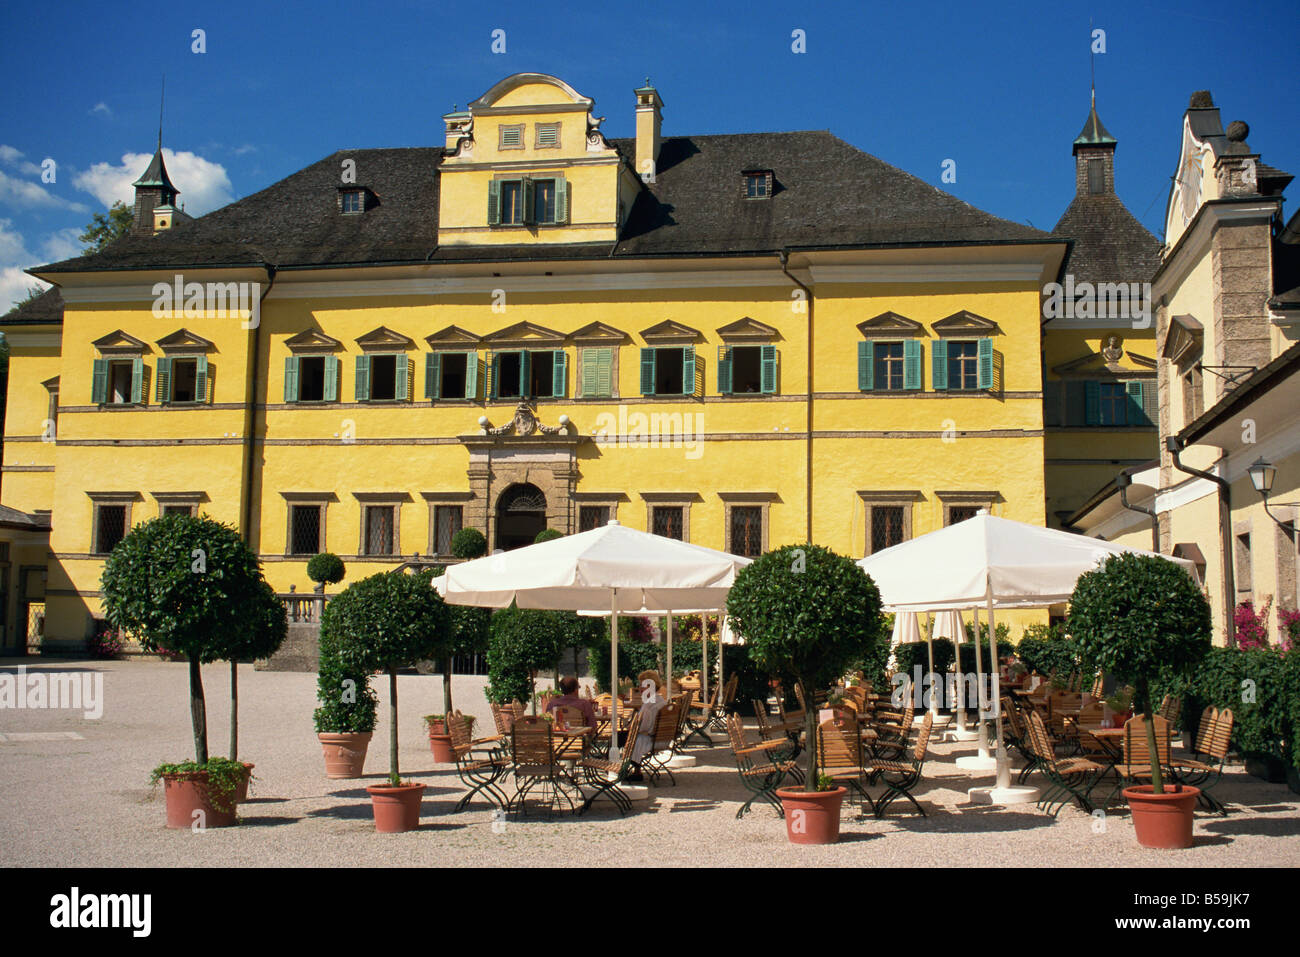 Schloss Hellbrunn construit entre 1613 et 1619 près de Salzbourg Autriche Europe Banque D'Images